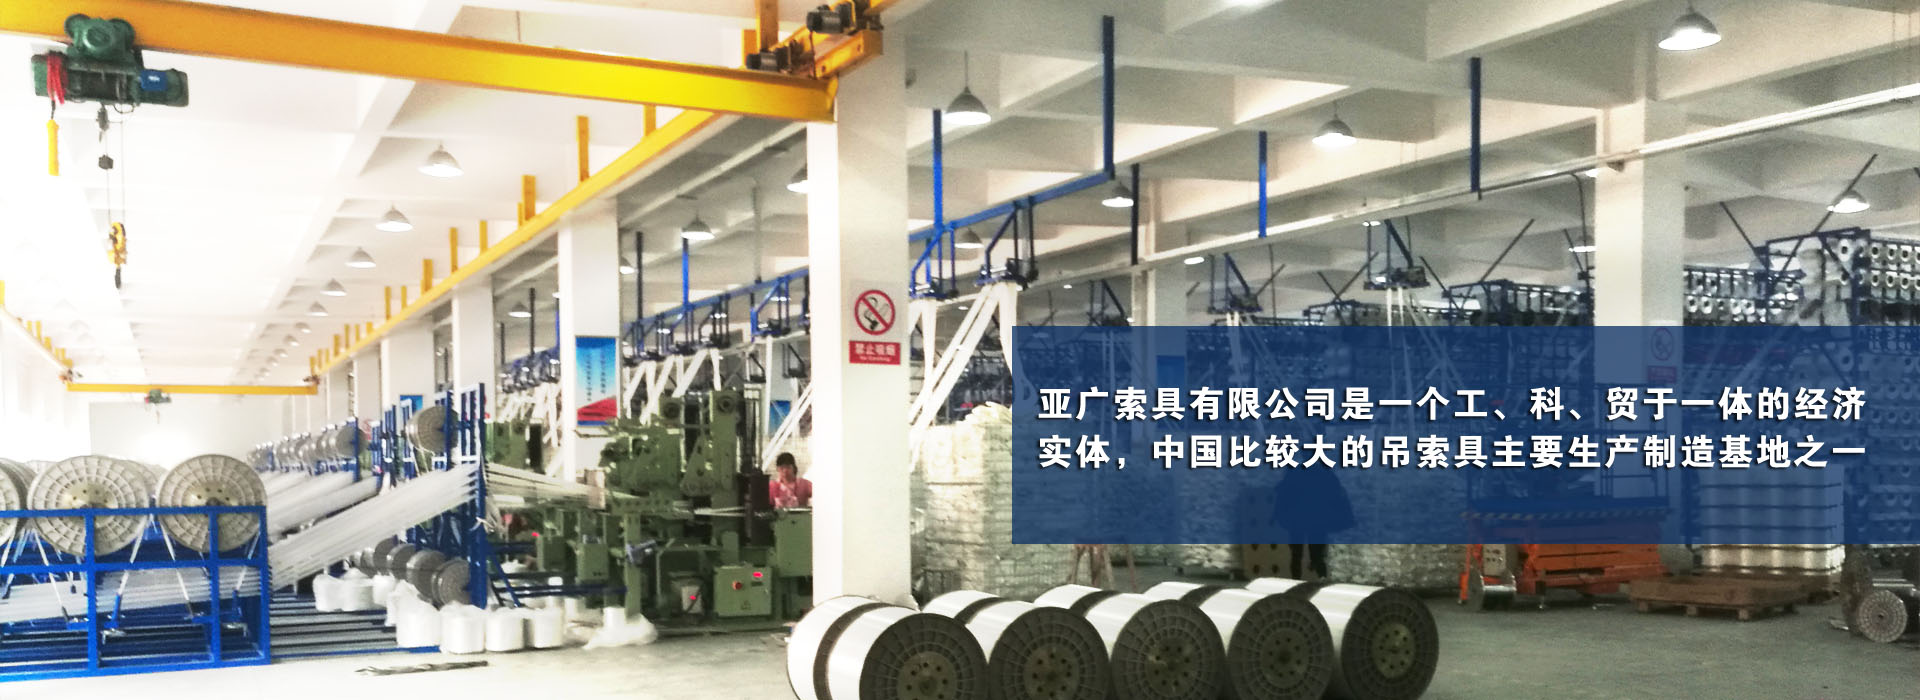 亞廣索具股份有限公司是一個工、科、貿于一體的經濟實體，中國比較大的吊索具主要生產制造基地之一